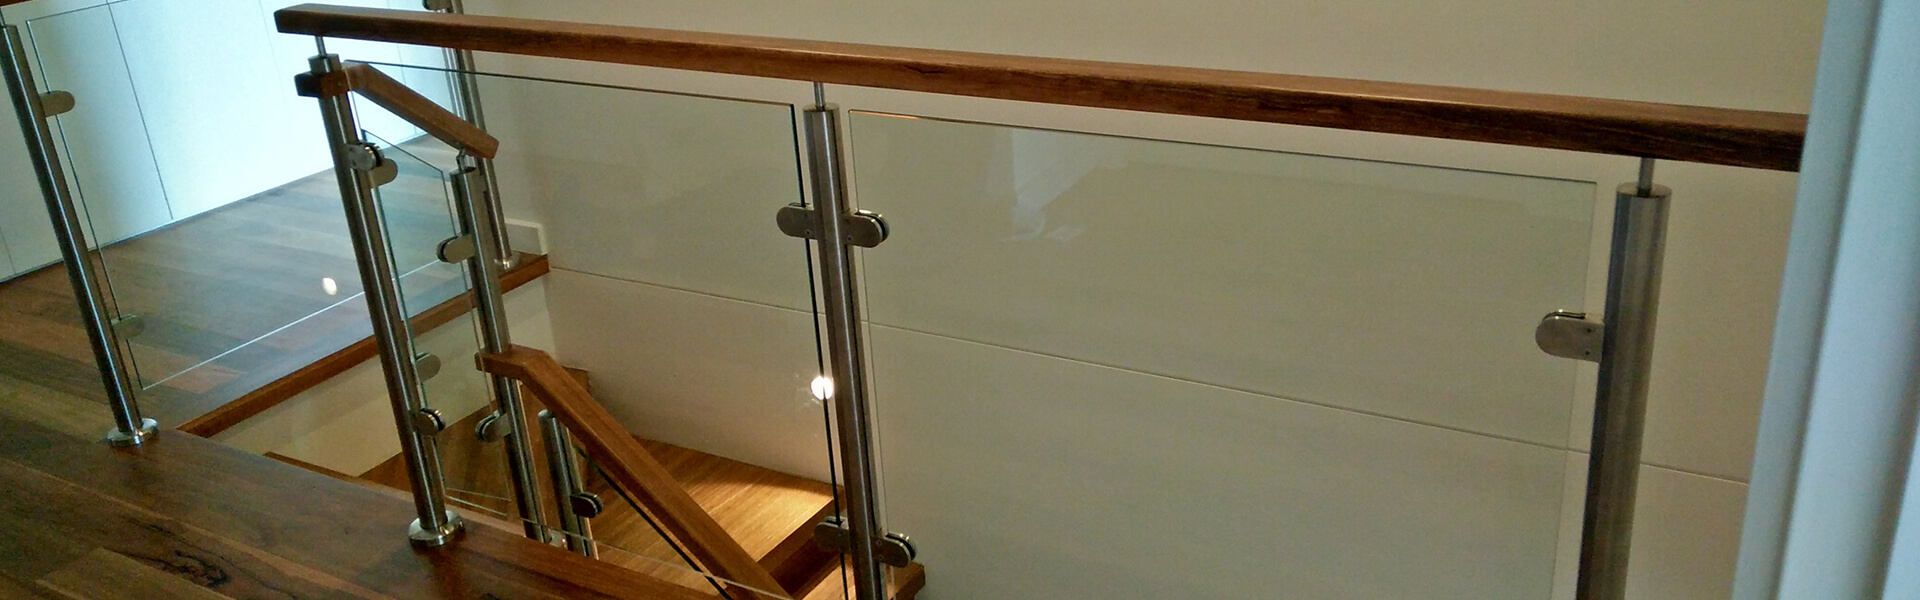 schody drewniane zabiegowe wewnętrzne z podwieszanymi stopniami, pół podwieszane, balustrady szklane, poręcze drewniane